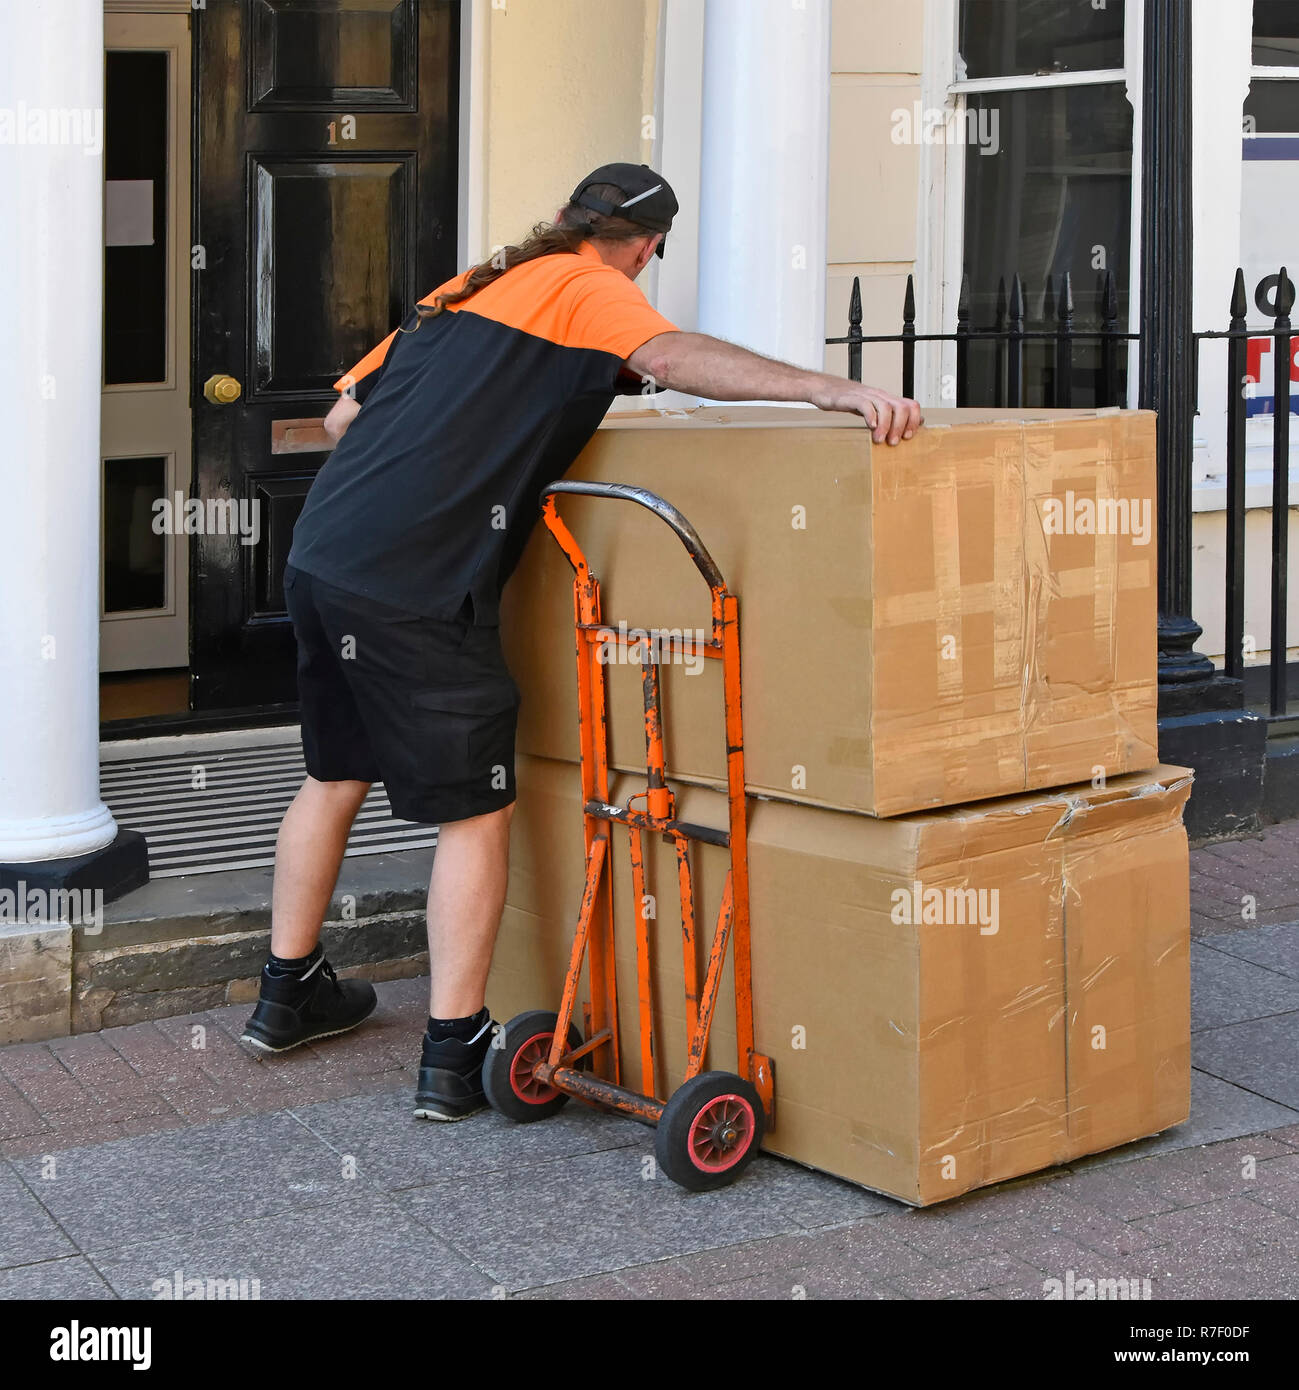 L'homme travaillant comme chauffeur de livraison de colis TNT boîte en carton de levage du chariot pour offrir à l'entrée étroite de Southend on Sea Essex porte England UK Banque D'Images